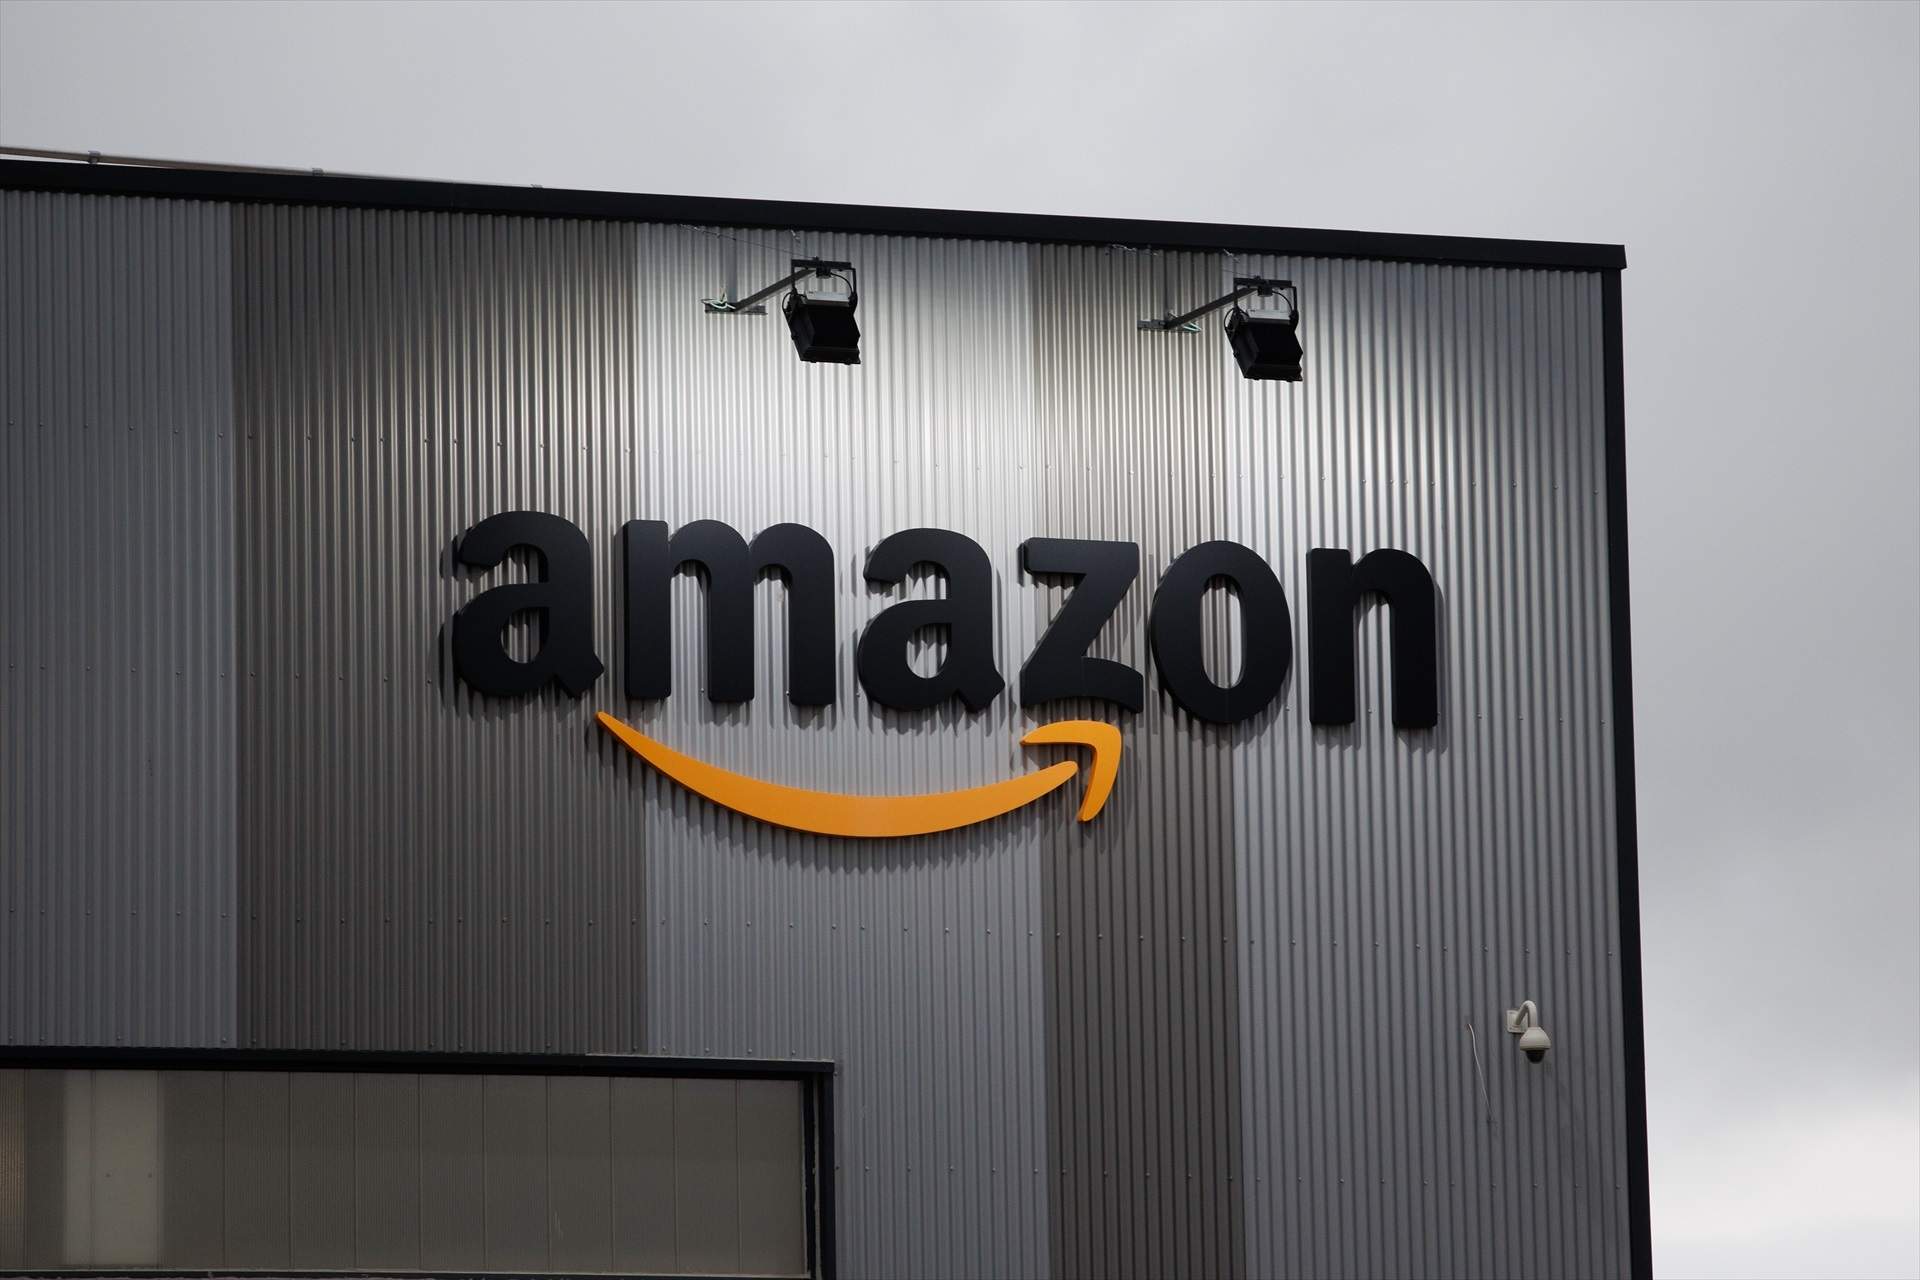 Amazon va ingressar 7.100 milions a Espanya, un 11% més, i ja compta amb 25.000 empleats fixos